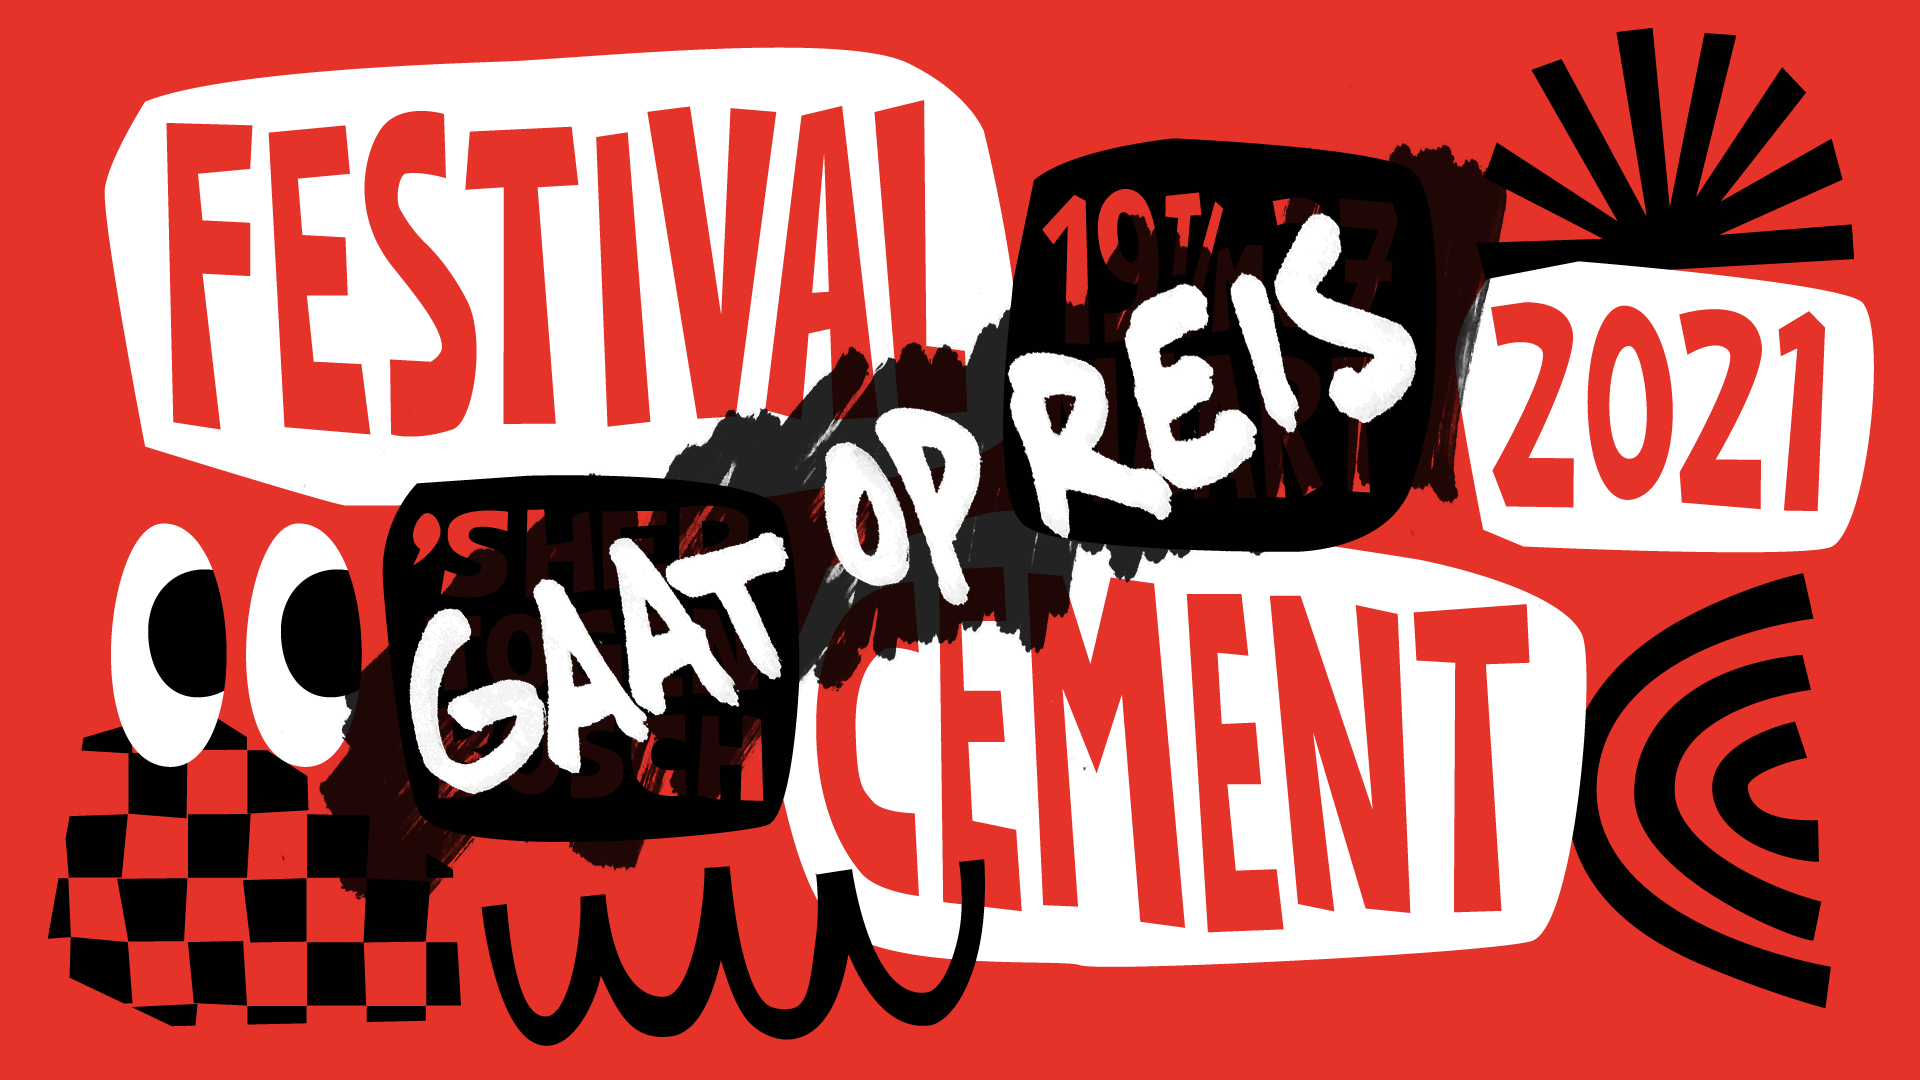 Festival Cement 2021 gaat op reis